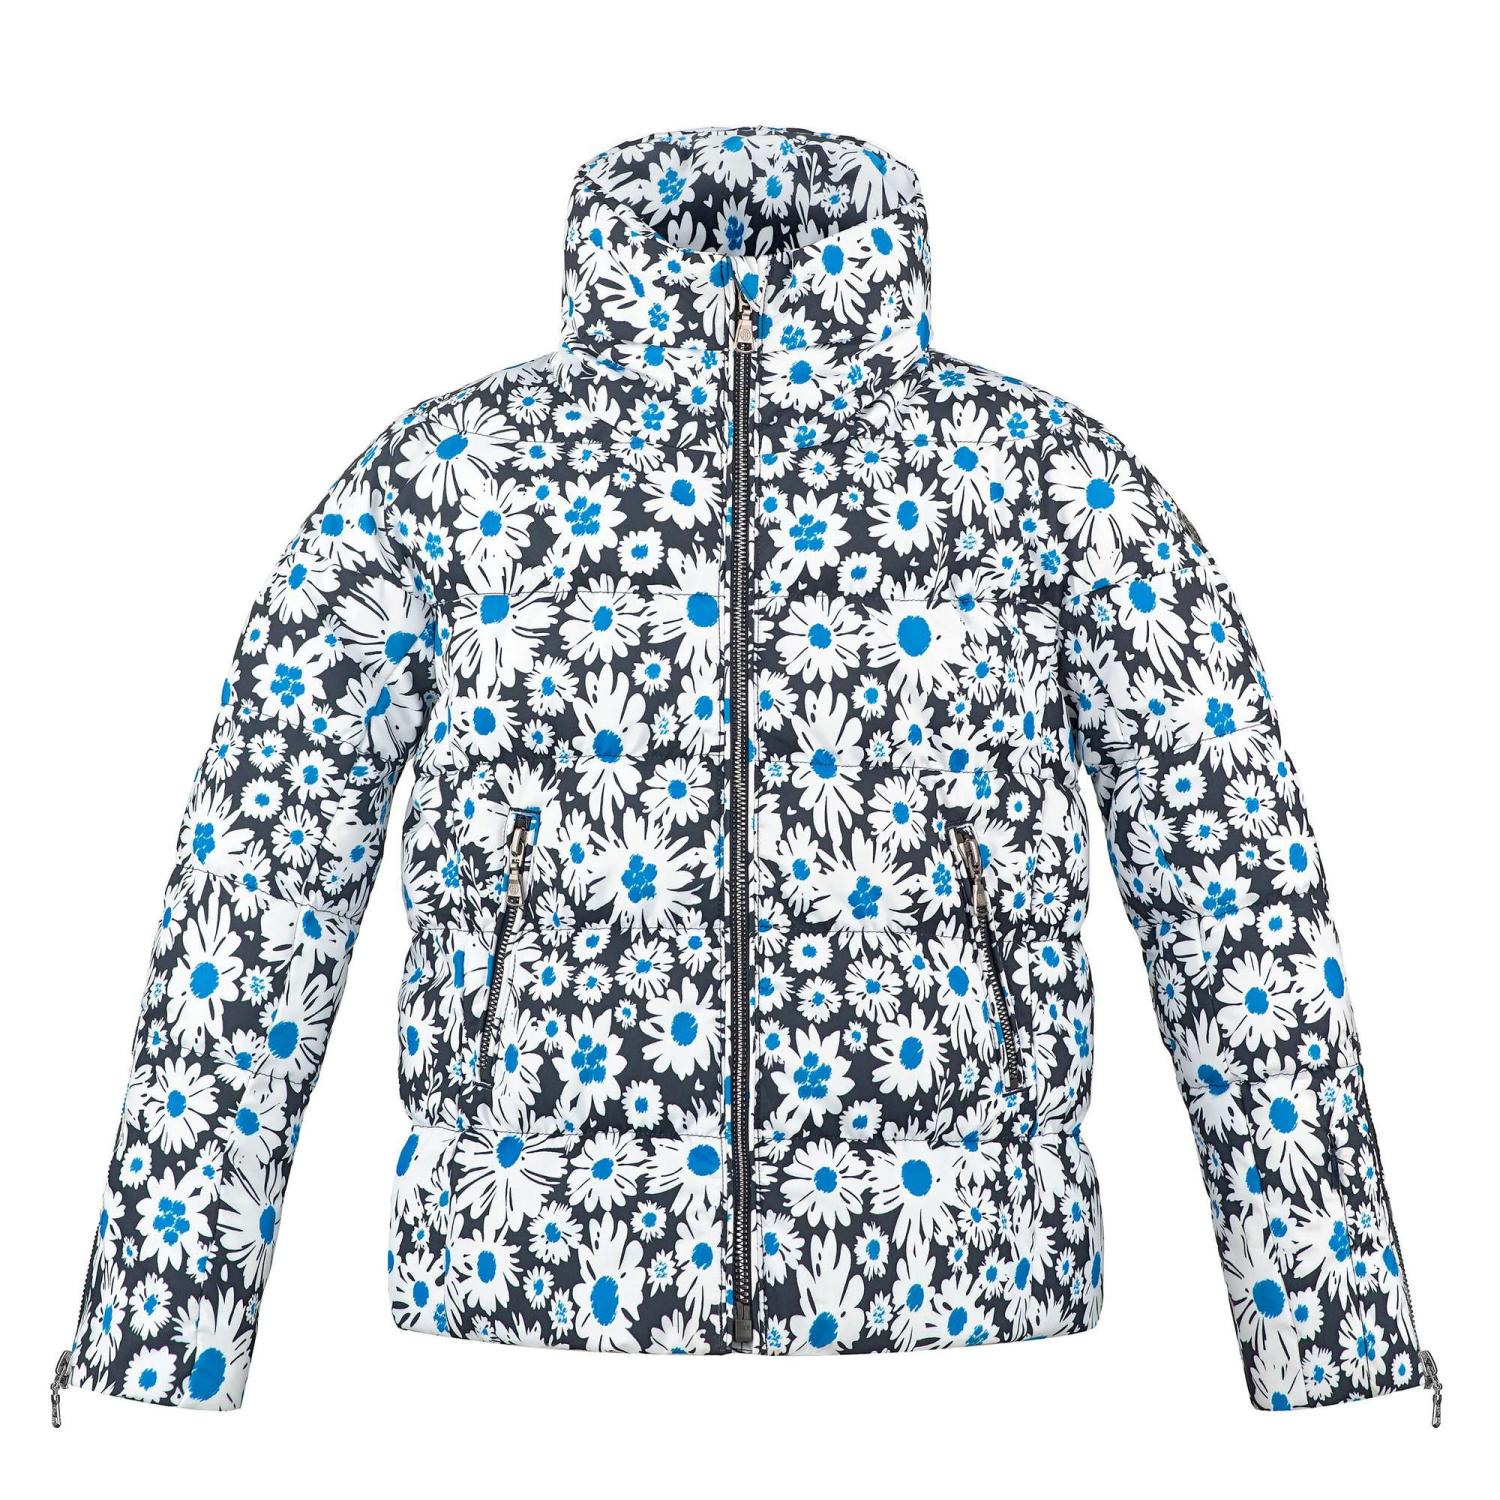 Куртка горнолыжная Poivre Blanc 20-21 Synthetic Down Jacket Jr Daisy Blue куртка горнолыжная poivre blanc 20 21 ski jacket multico grey